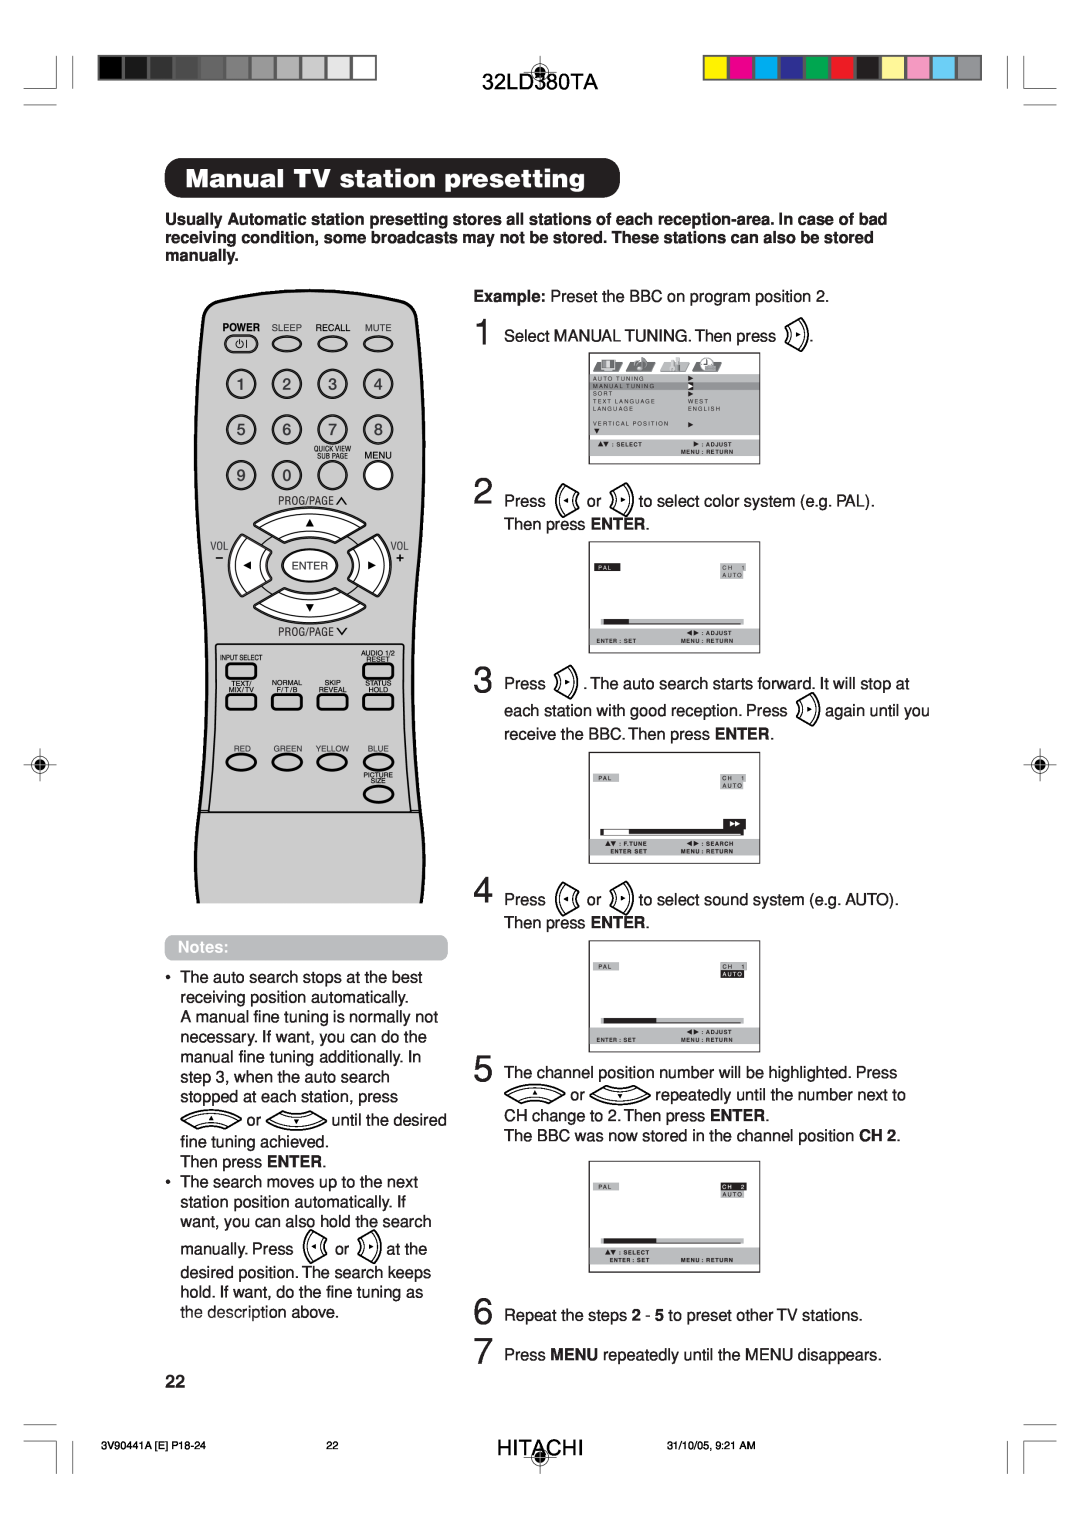 Hitachi 32LD380TA user manual Manual TV station presetting, Hitachi 